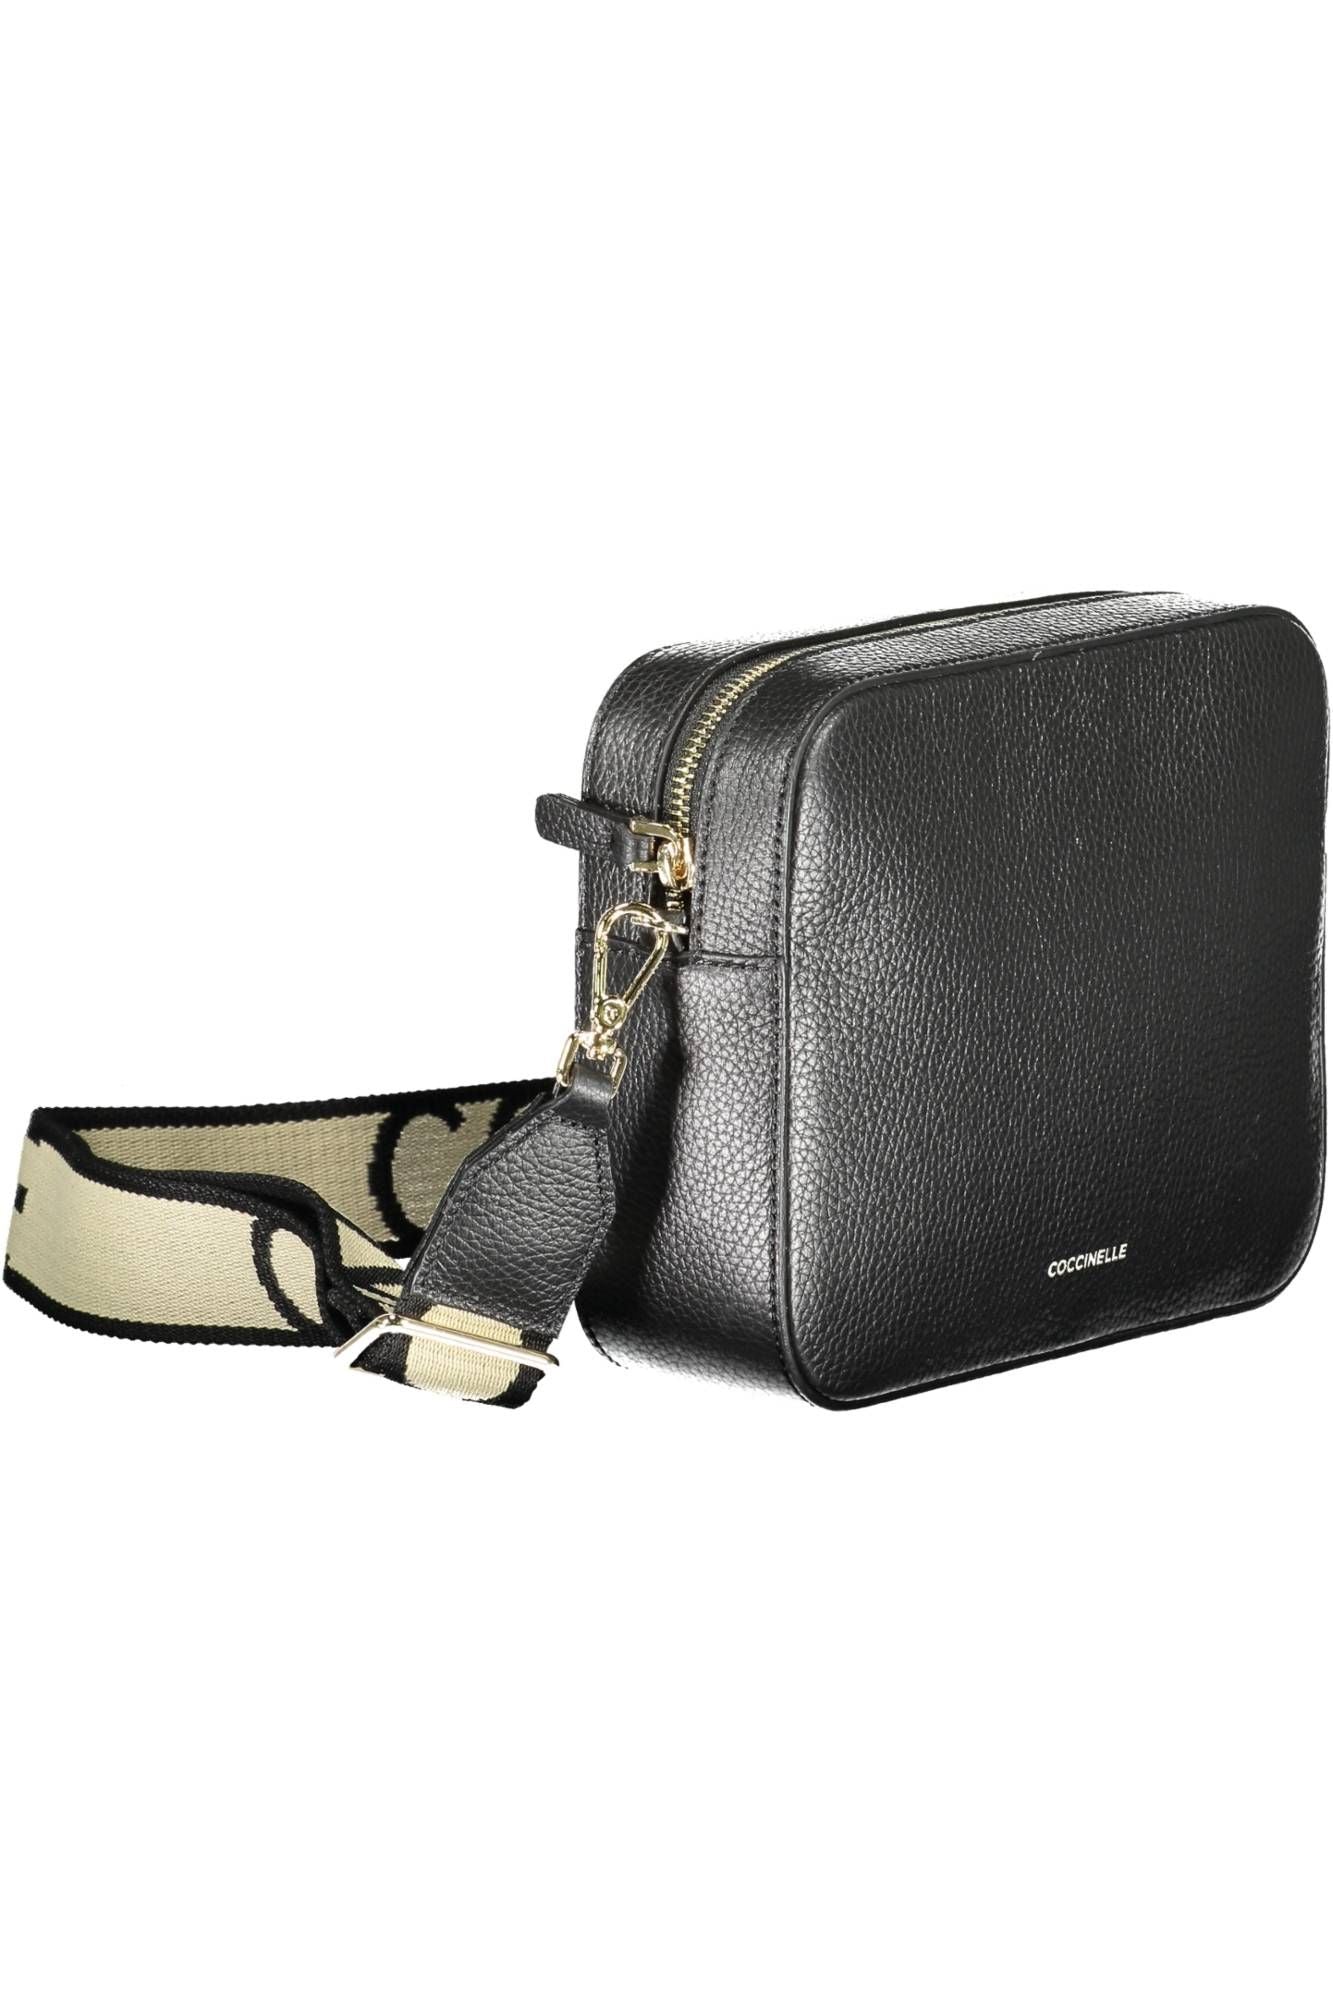 Coccinelle Elegant Black Leather Shoulder Bag with Contrasting Details